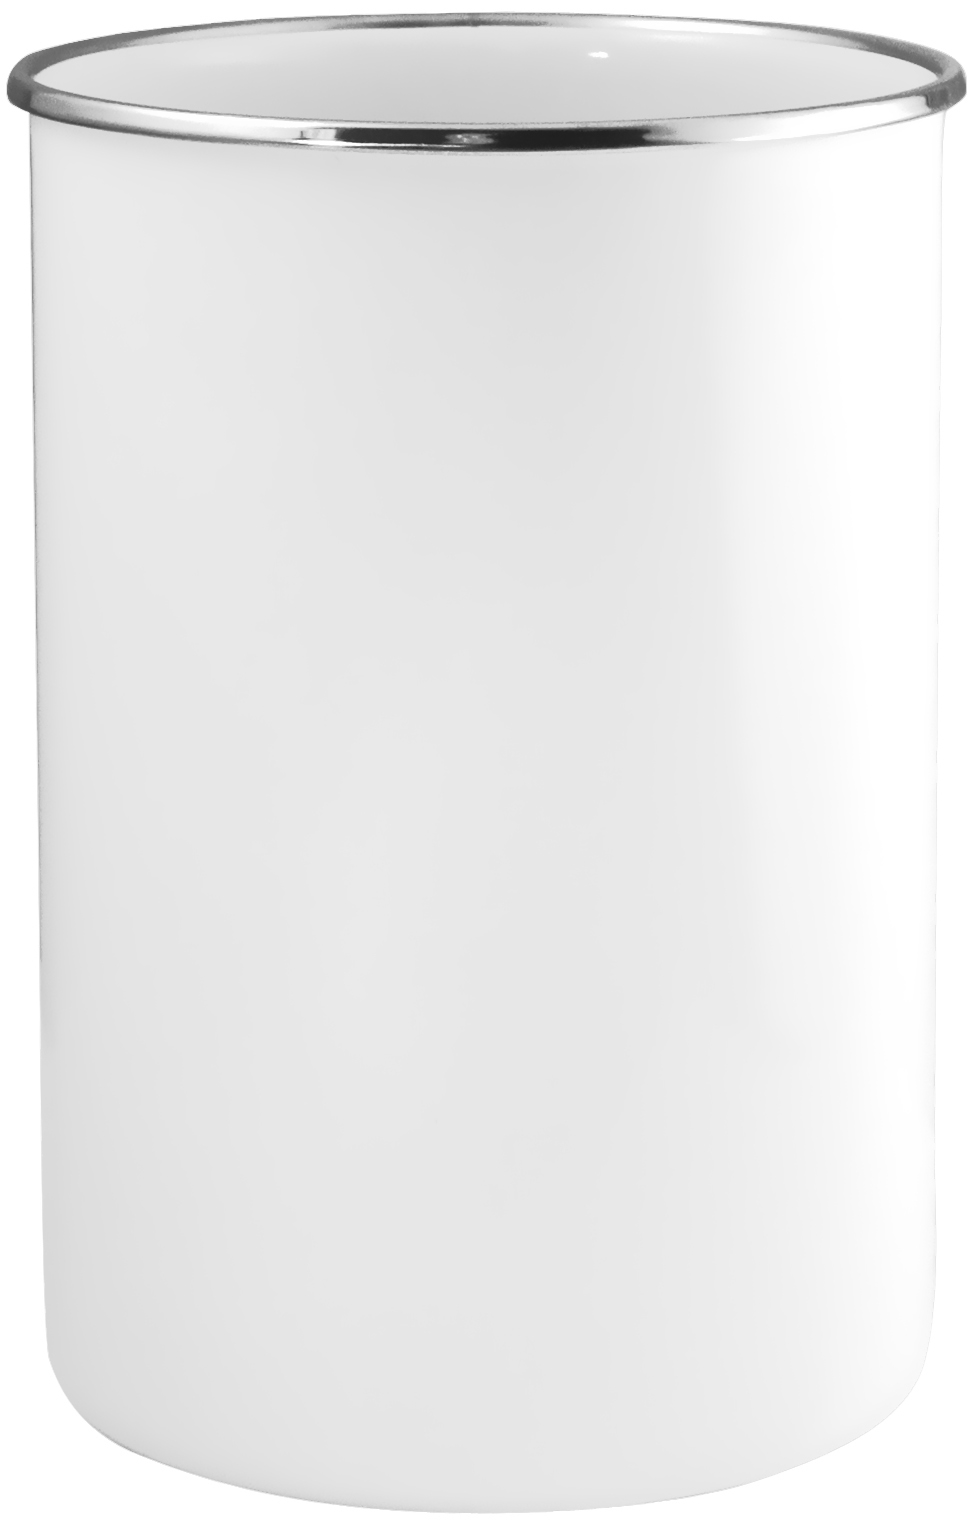 82300 White - Utensil Jar